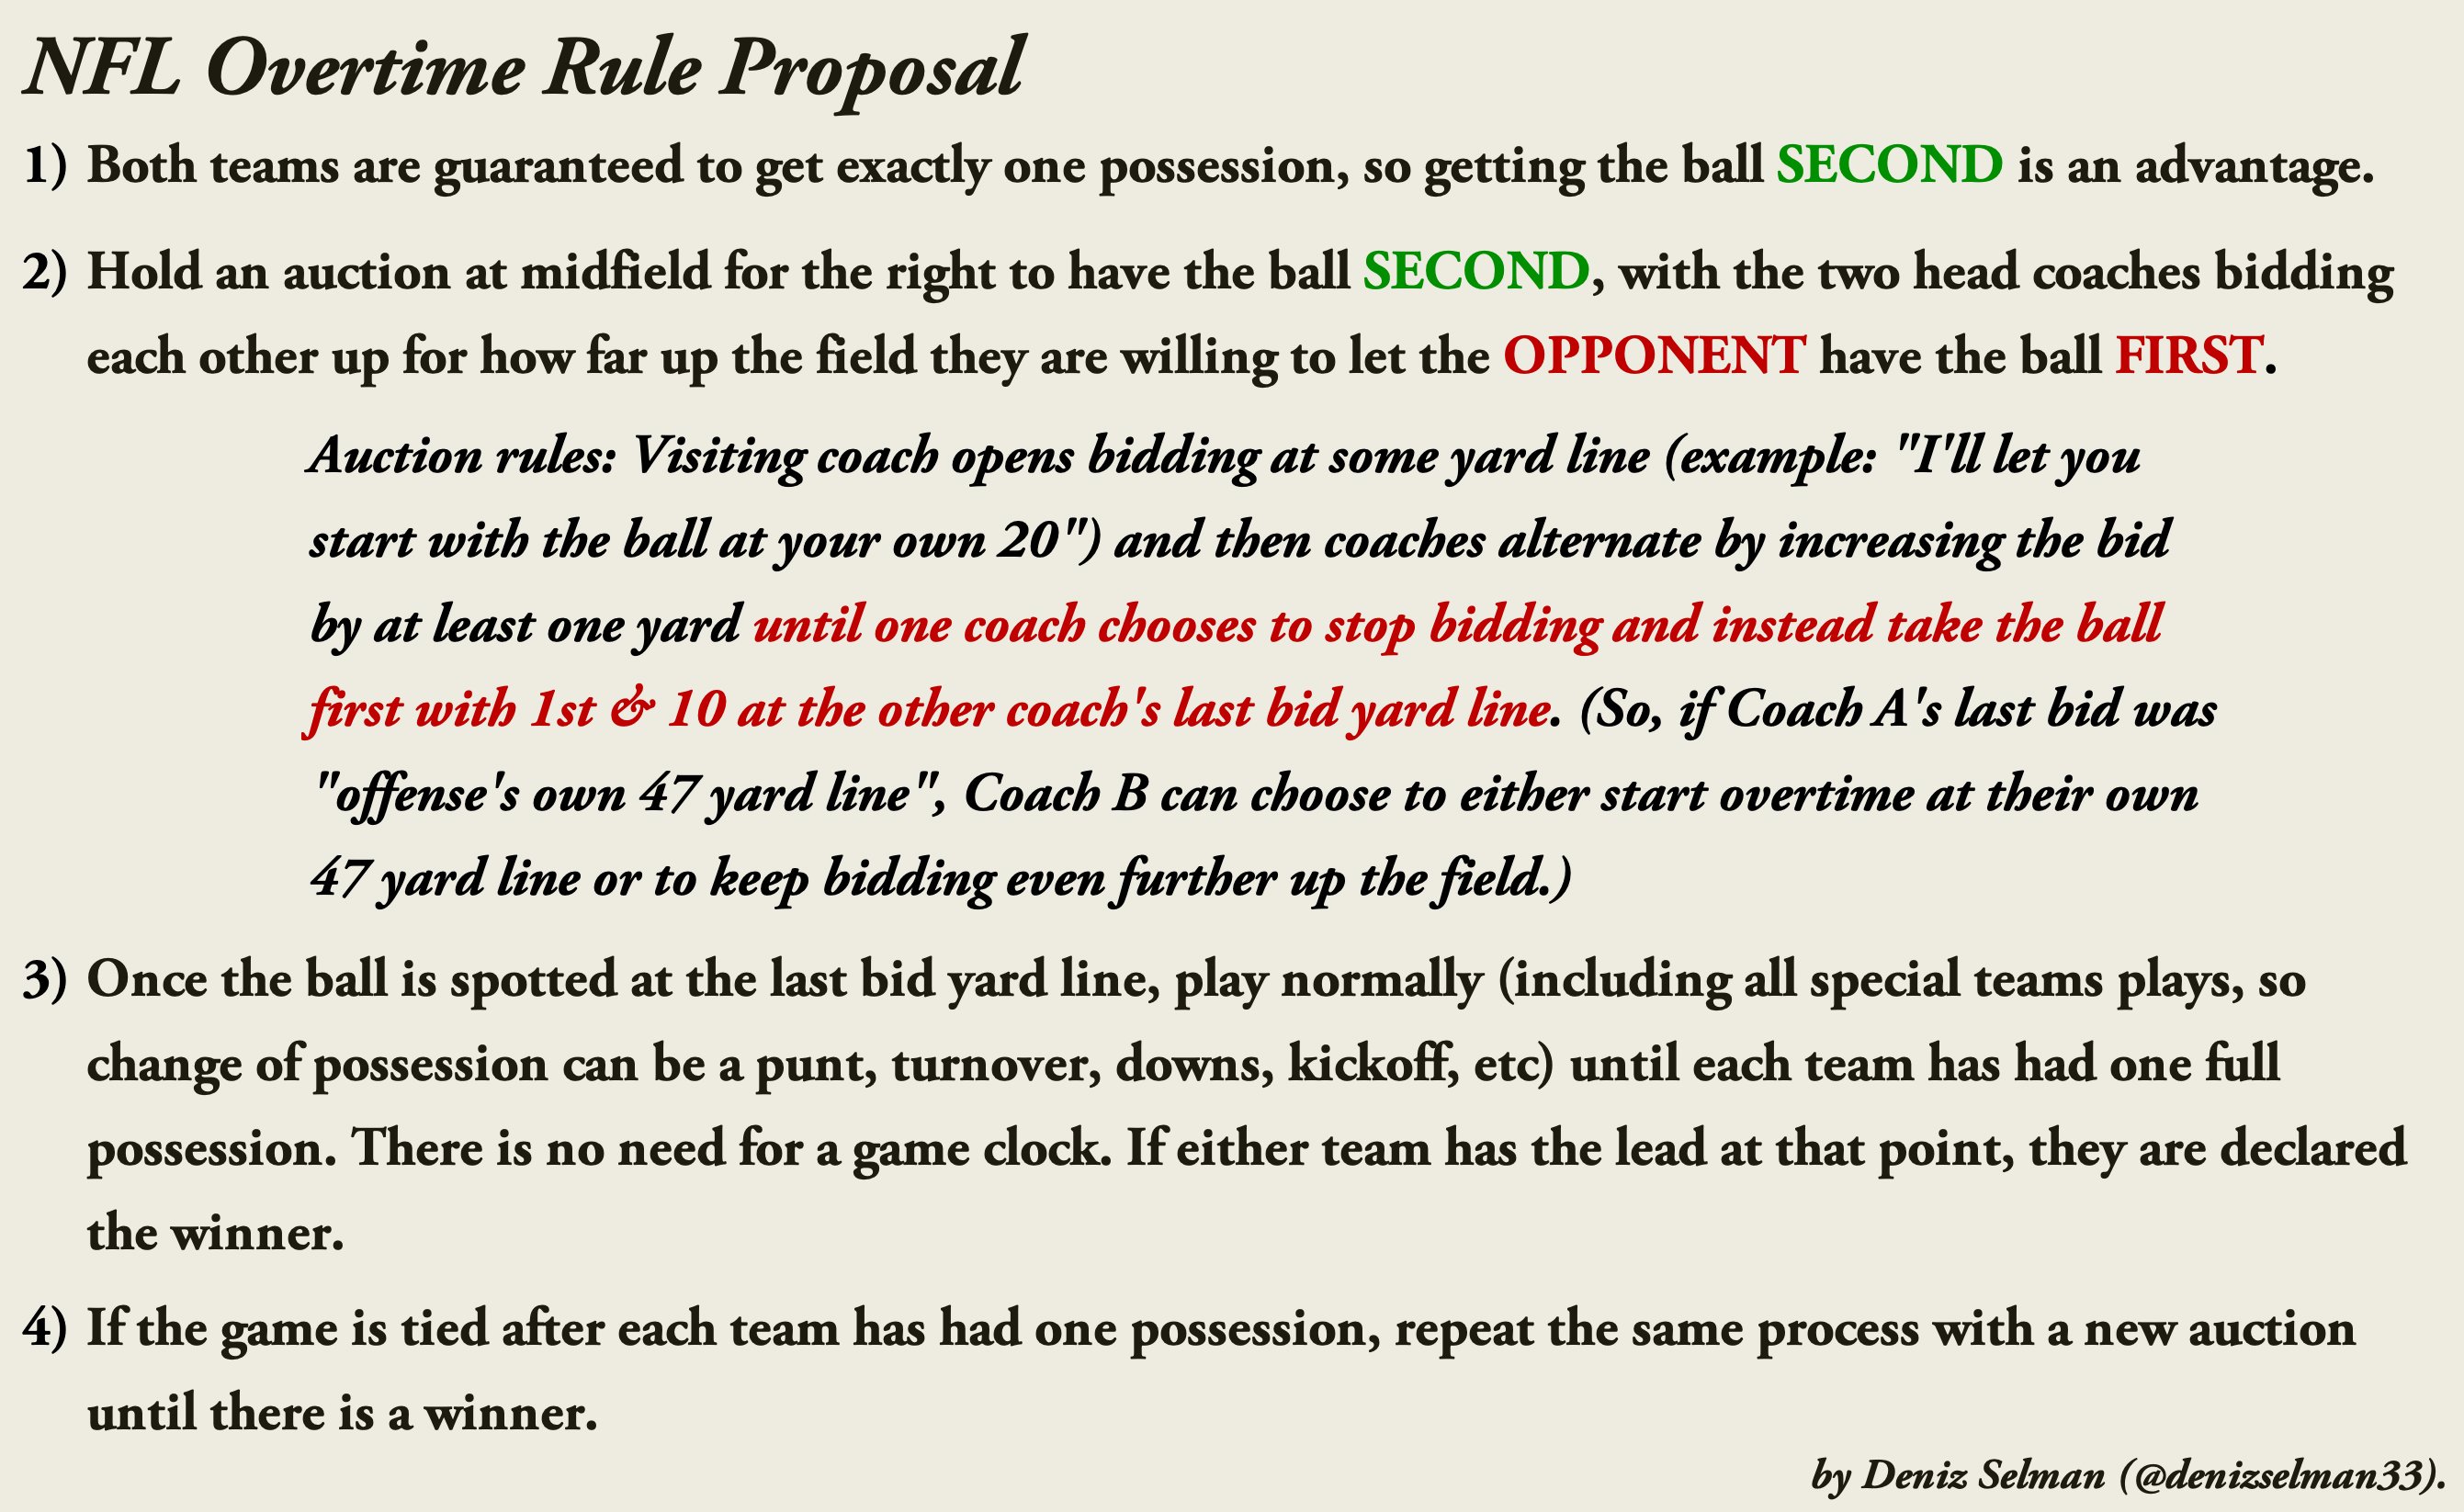 Deniz Selman on X: 'Here is my #NFL overtime rule proposal. It is